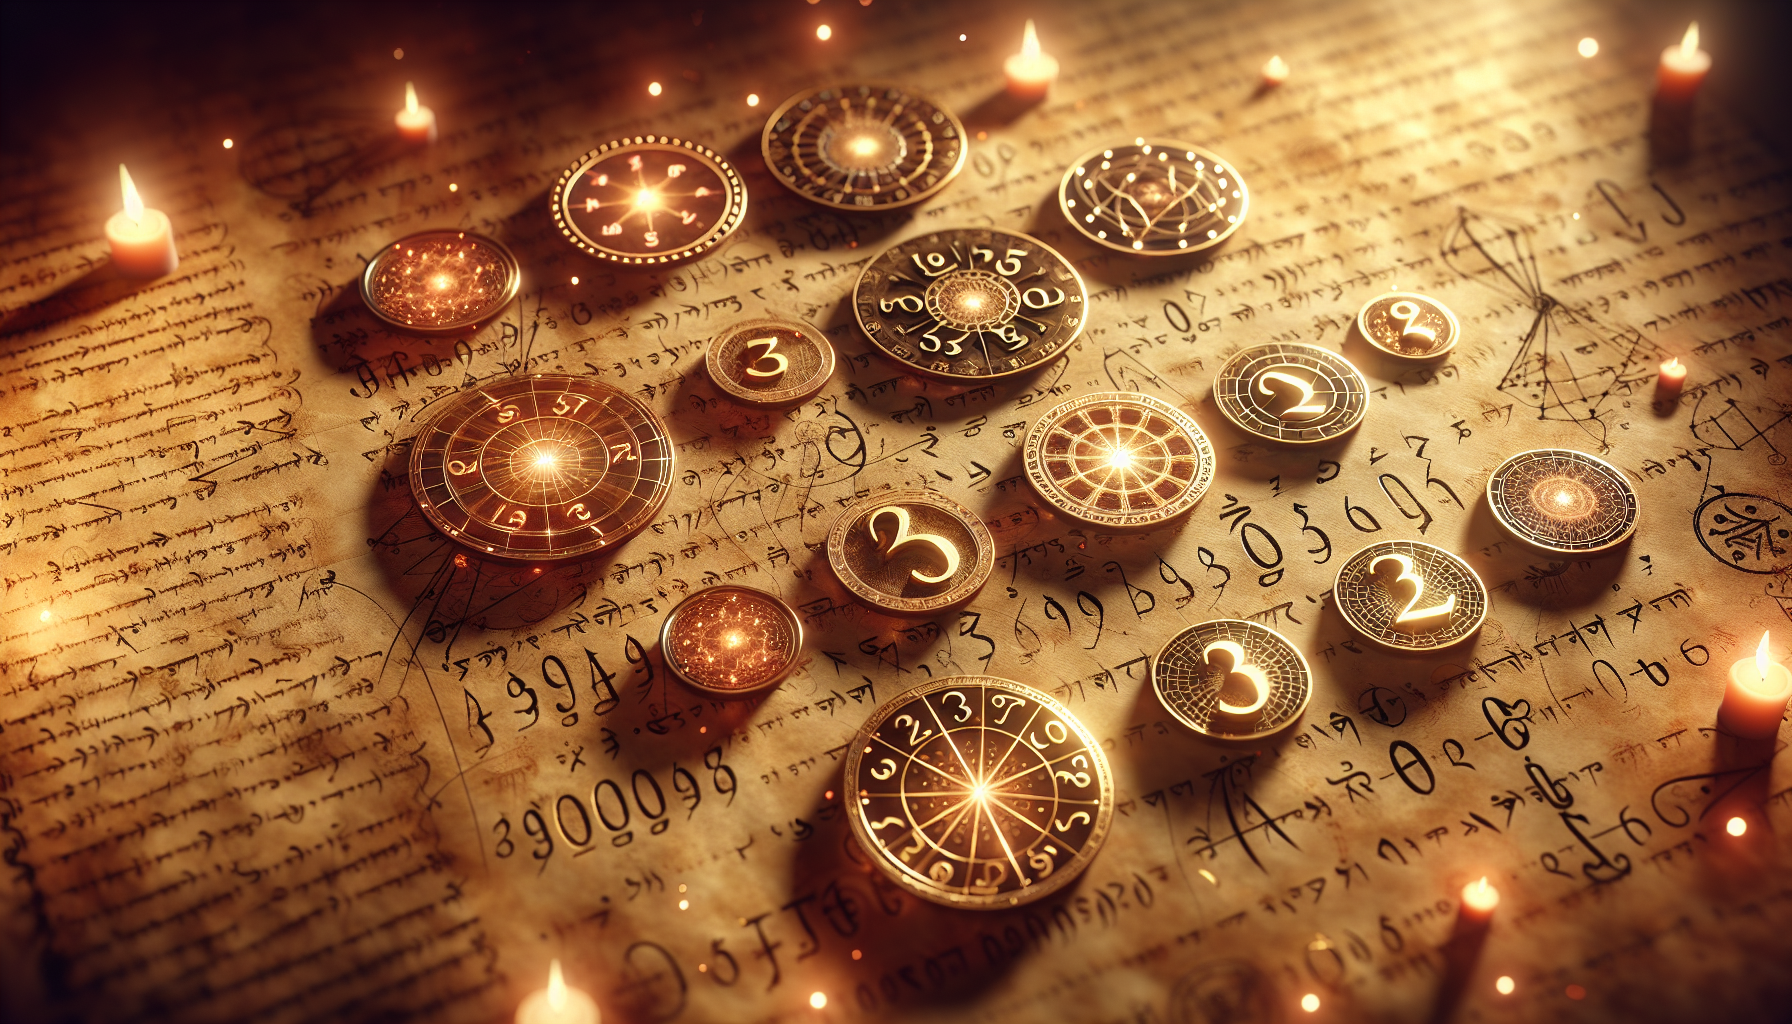 Numerology symbols and ancient manuscripts